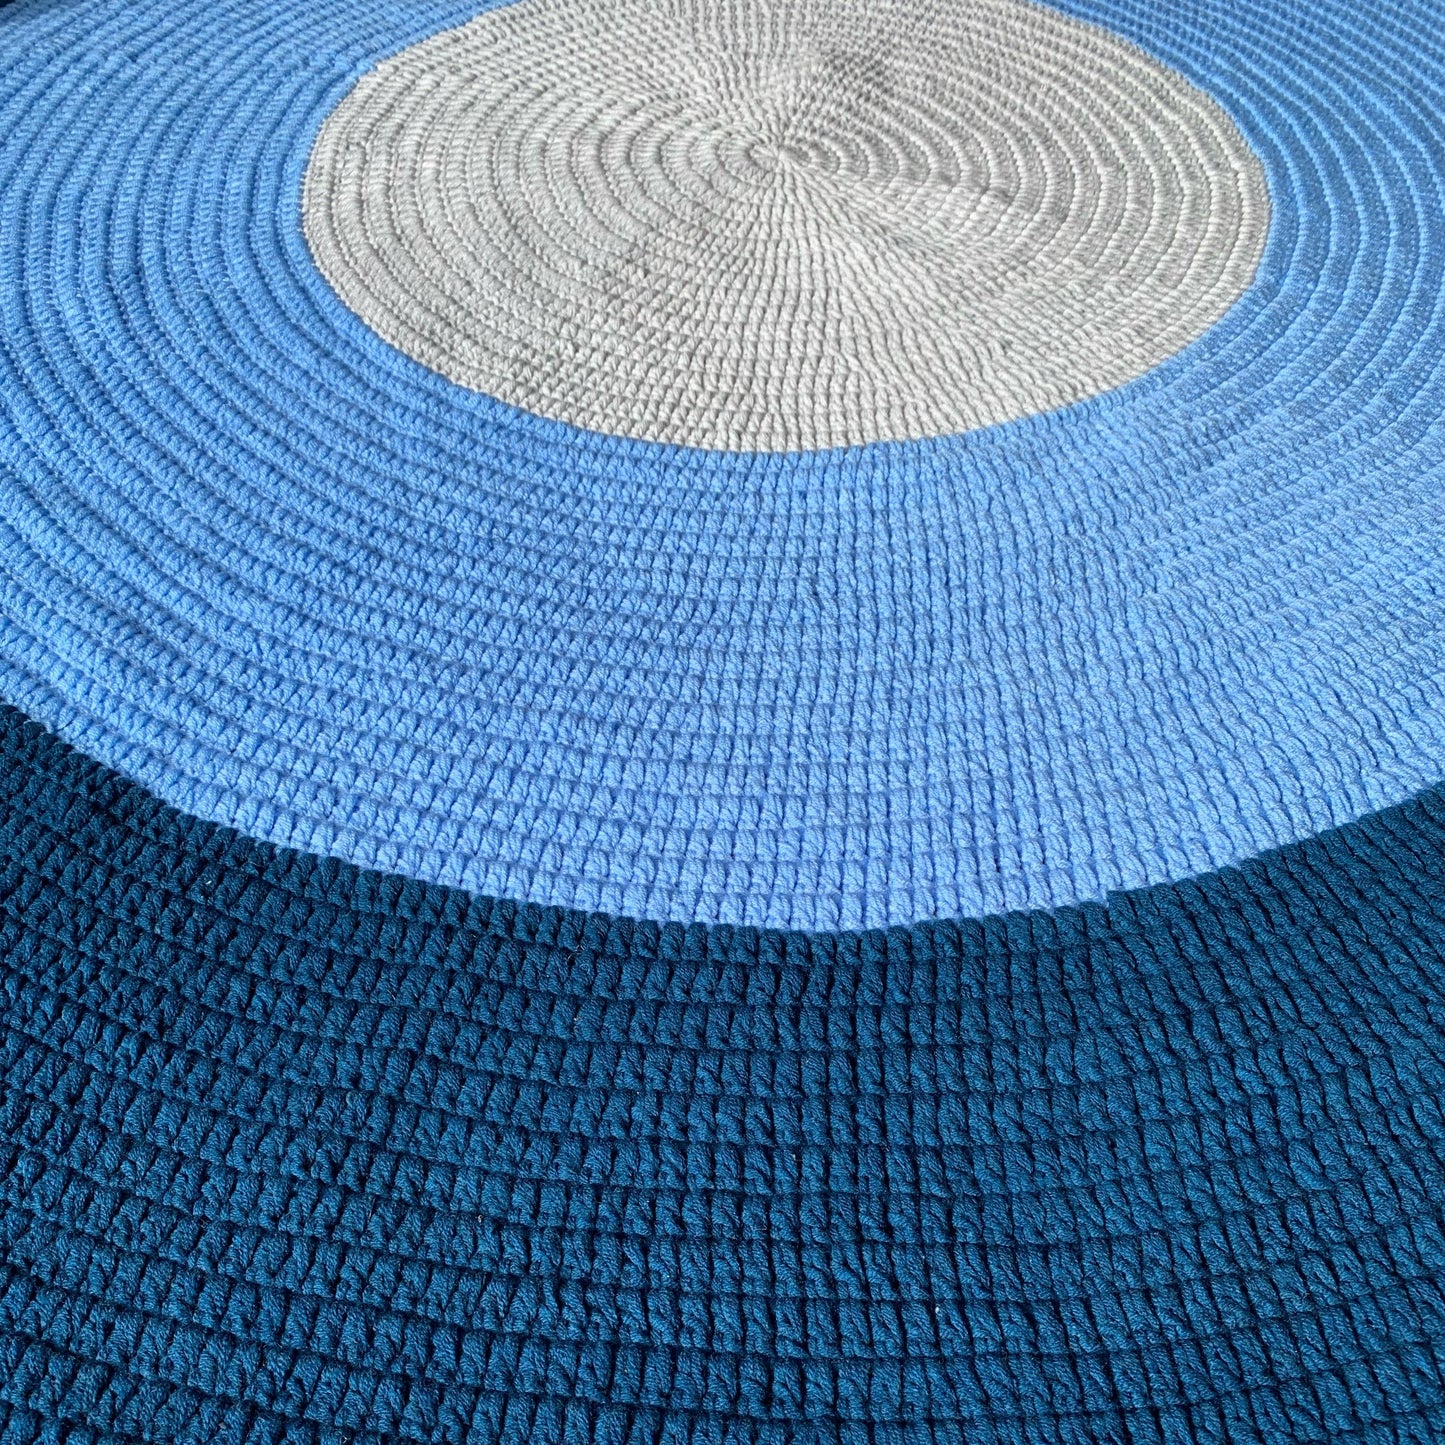 Crochet Rug - Navy Blue, Light Blue + Grey